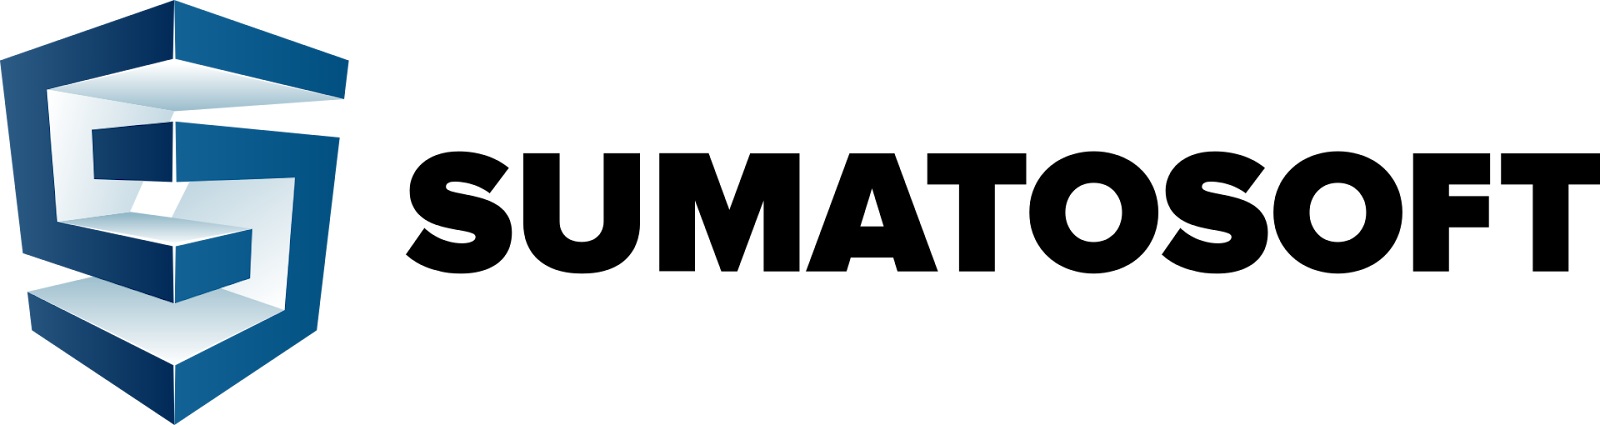 sumatosoft's logo